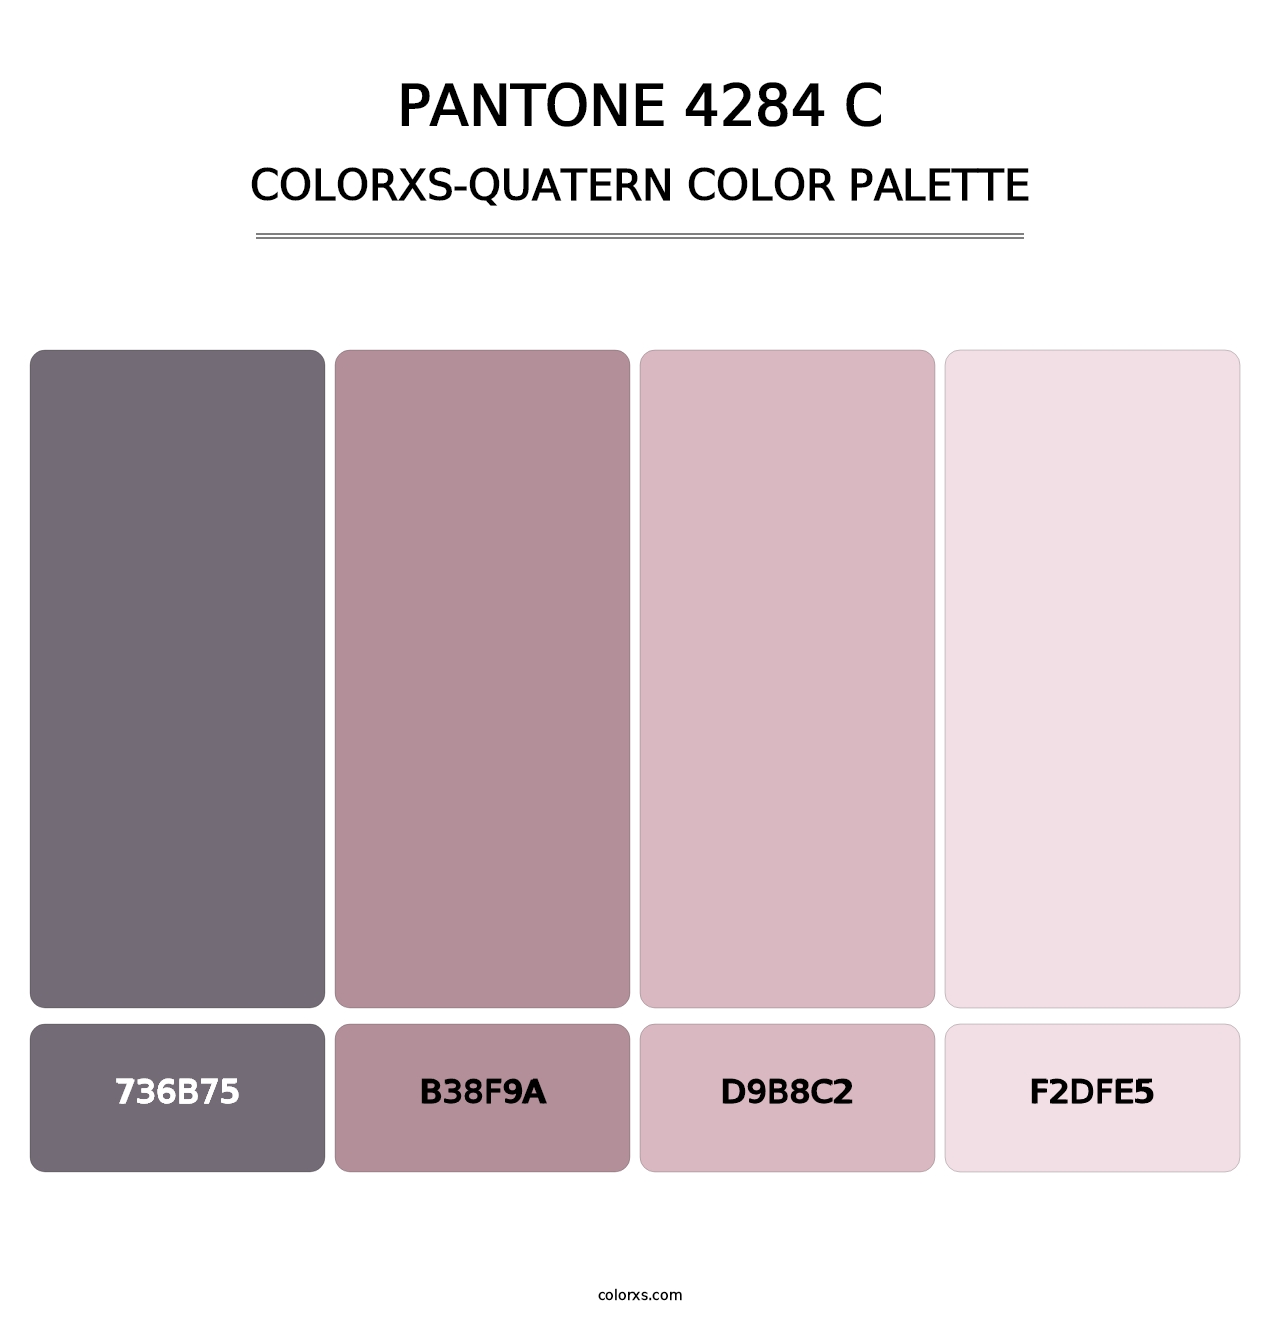 PANTONE 4284 C - Colorxs Quatern Palette